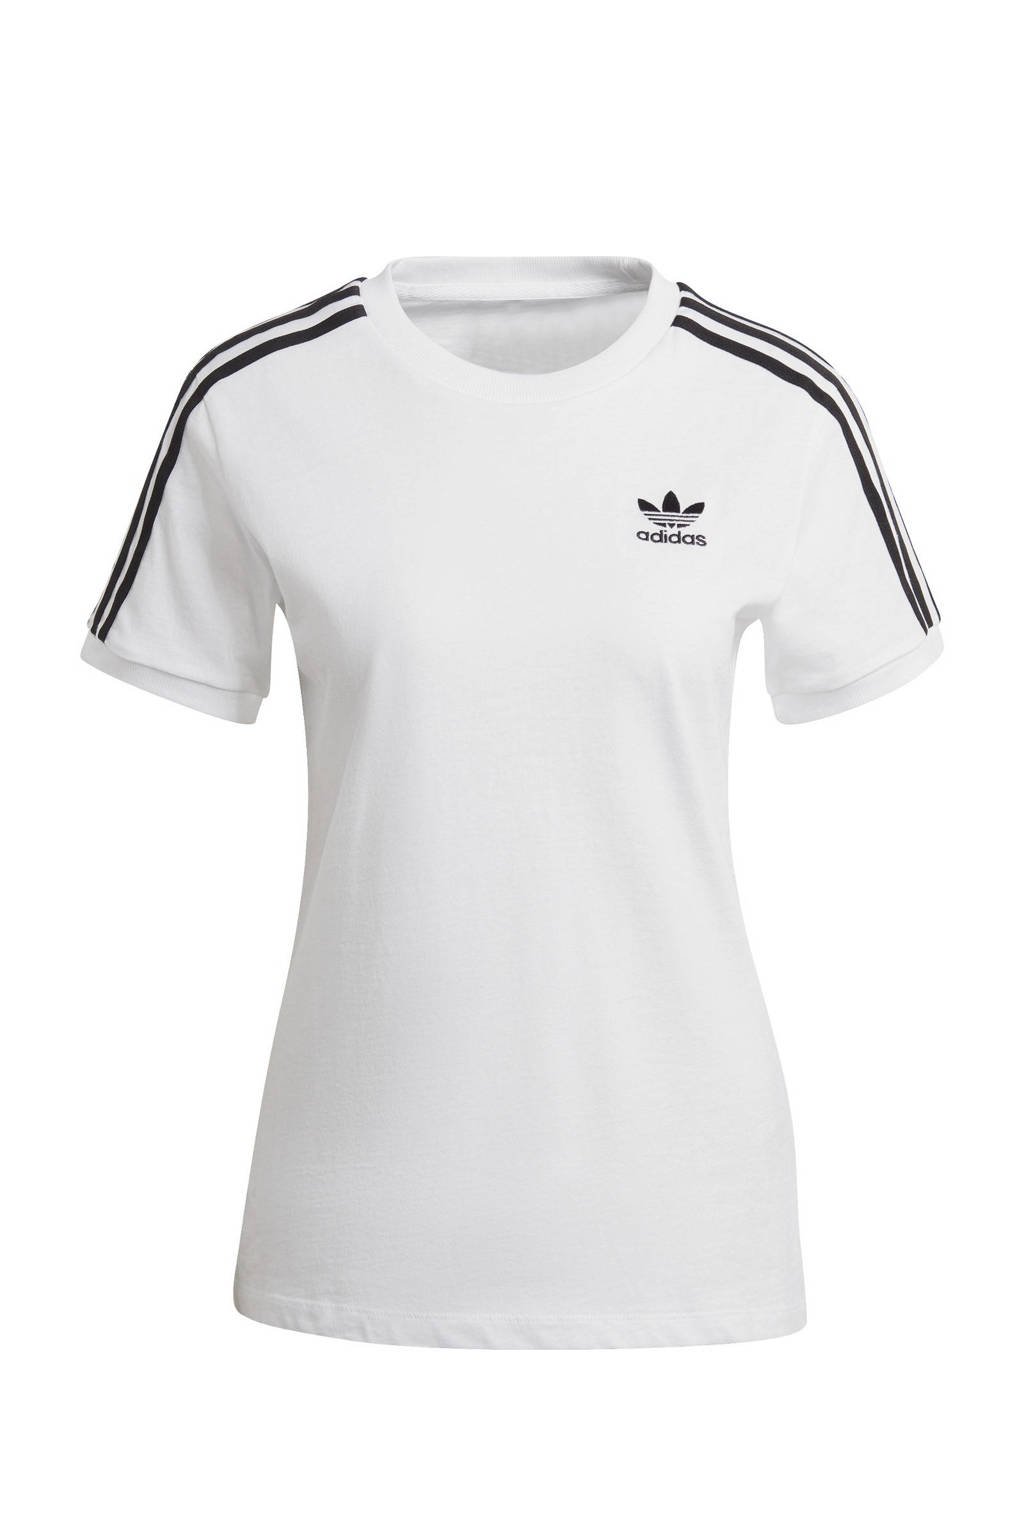 ernstig ik ben trots regeling adidas Originals Adicolor T-shirt wit/zwart | wehkamp